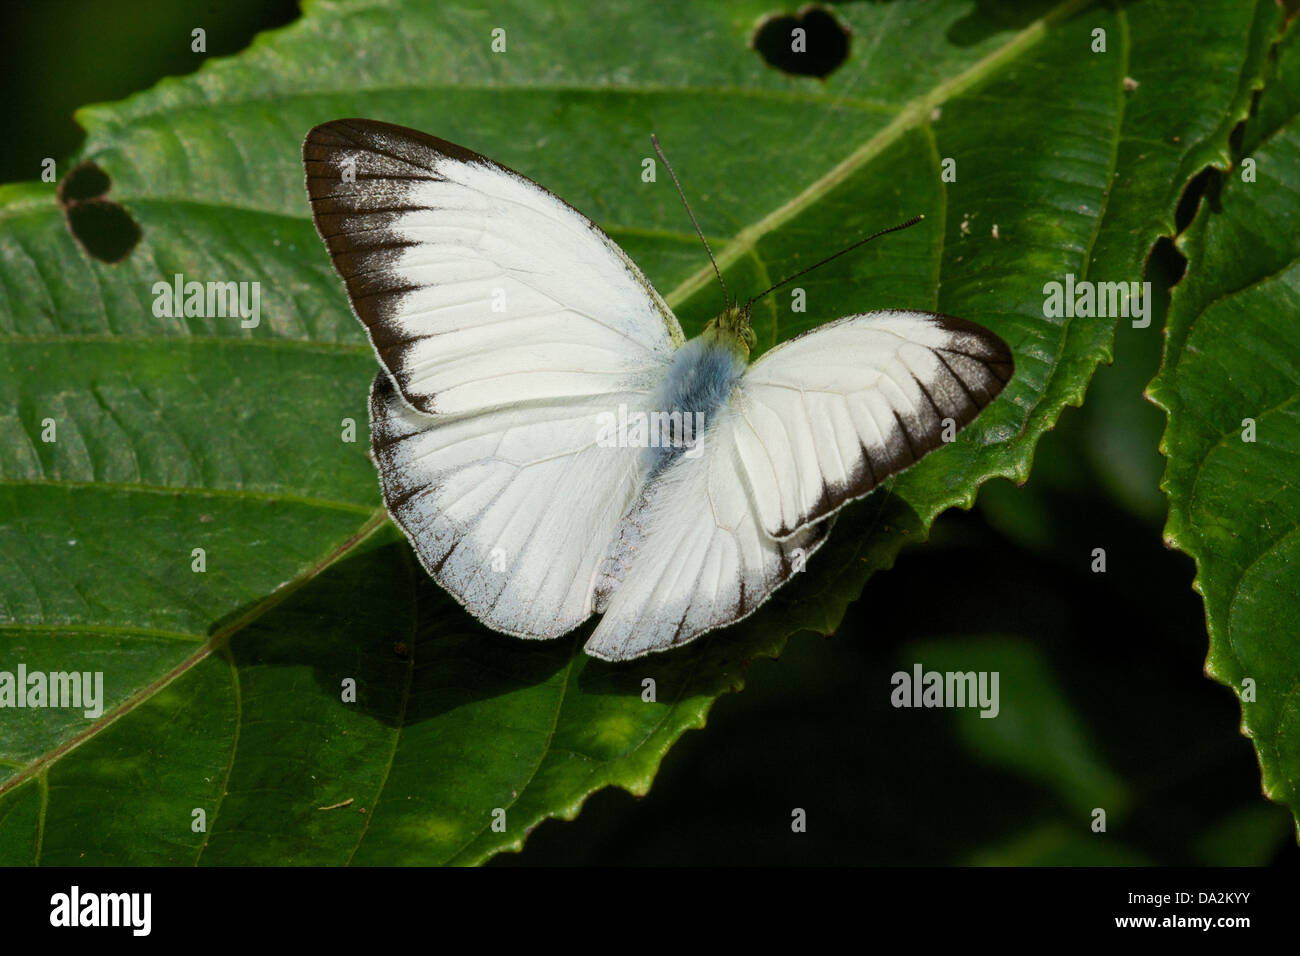 Udaiana cynis cynis, la foresta di bianco, è una farfalla nella famiglia Pieridae. Essa si trova nel sud-est asiatico. Foto Stock